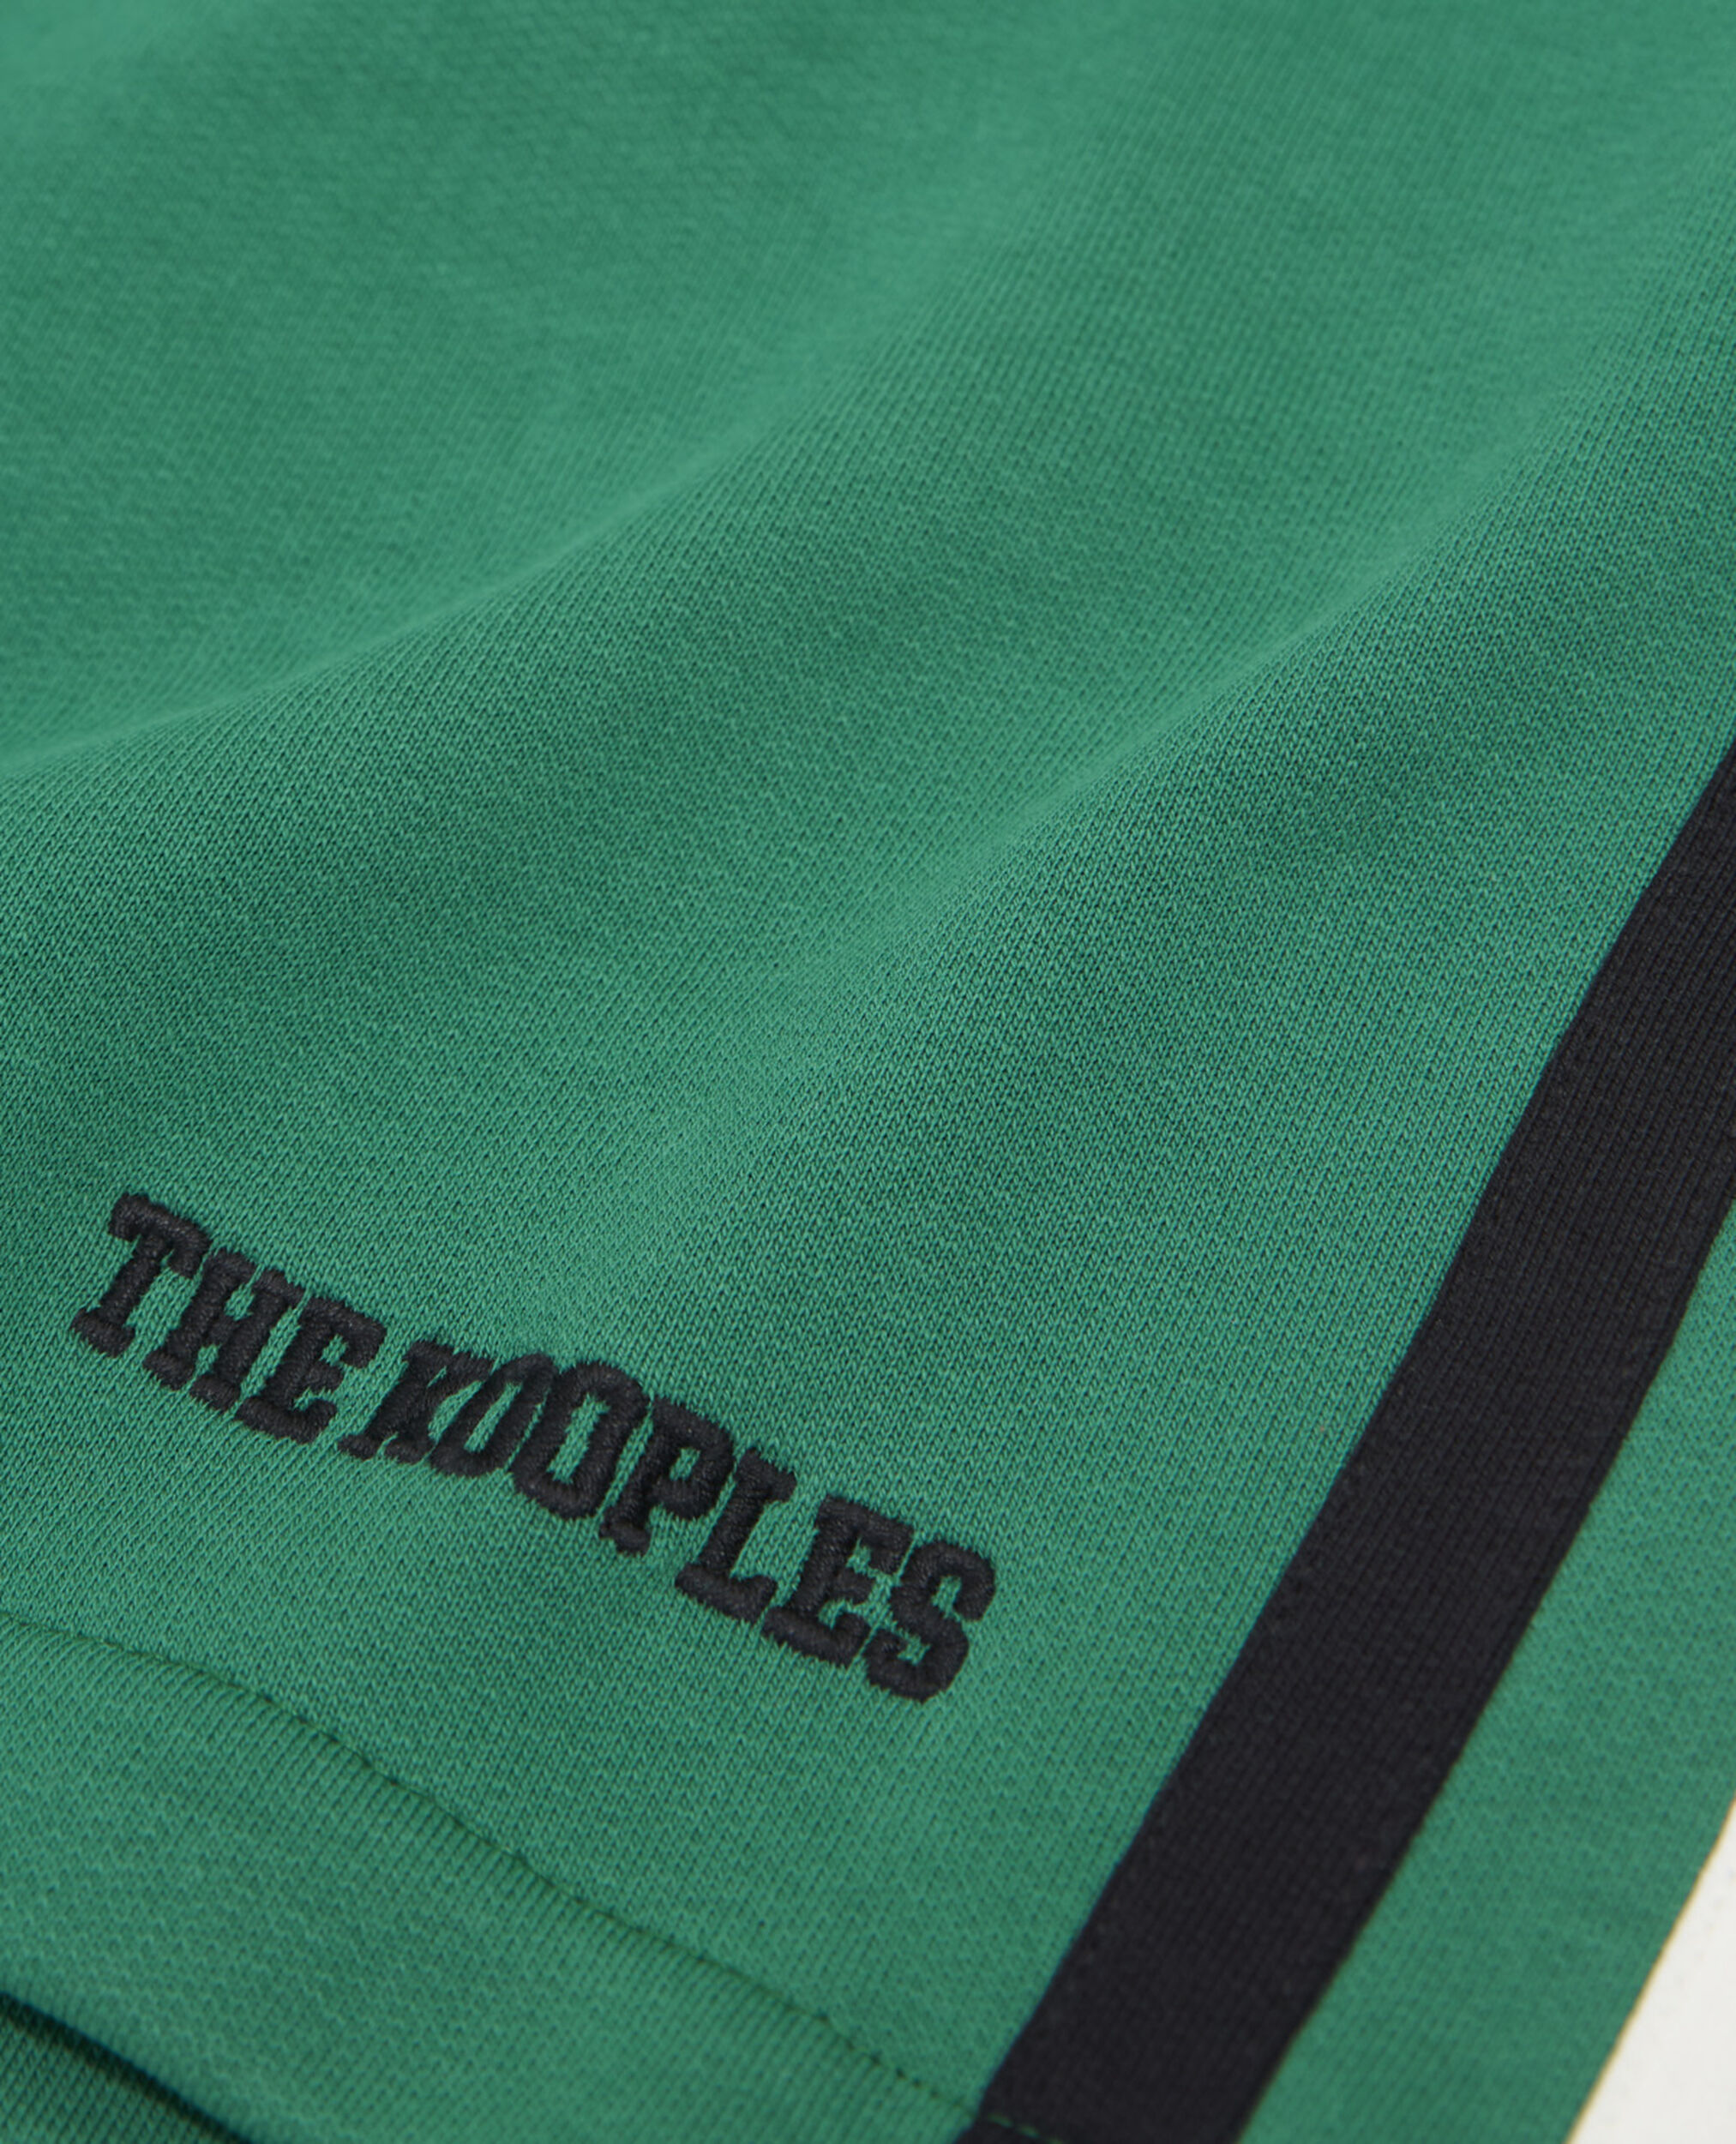 Green fleece shorts with black side stripes, GREEN BLACK ECRU, hi-res image number null